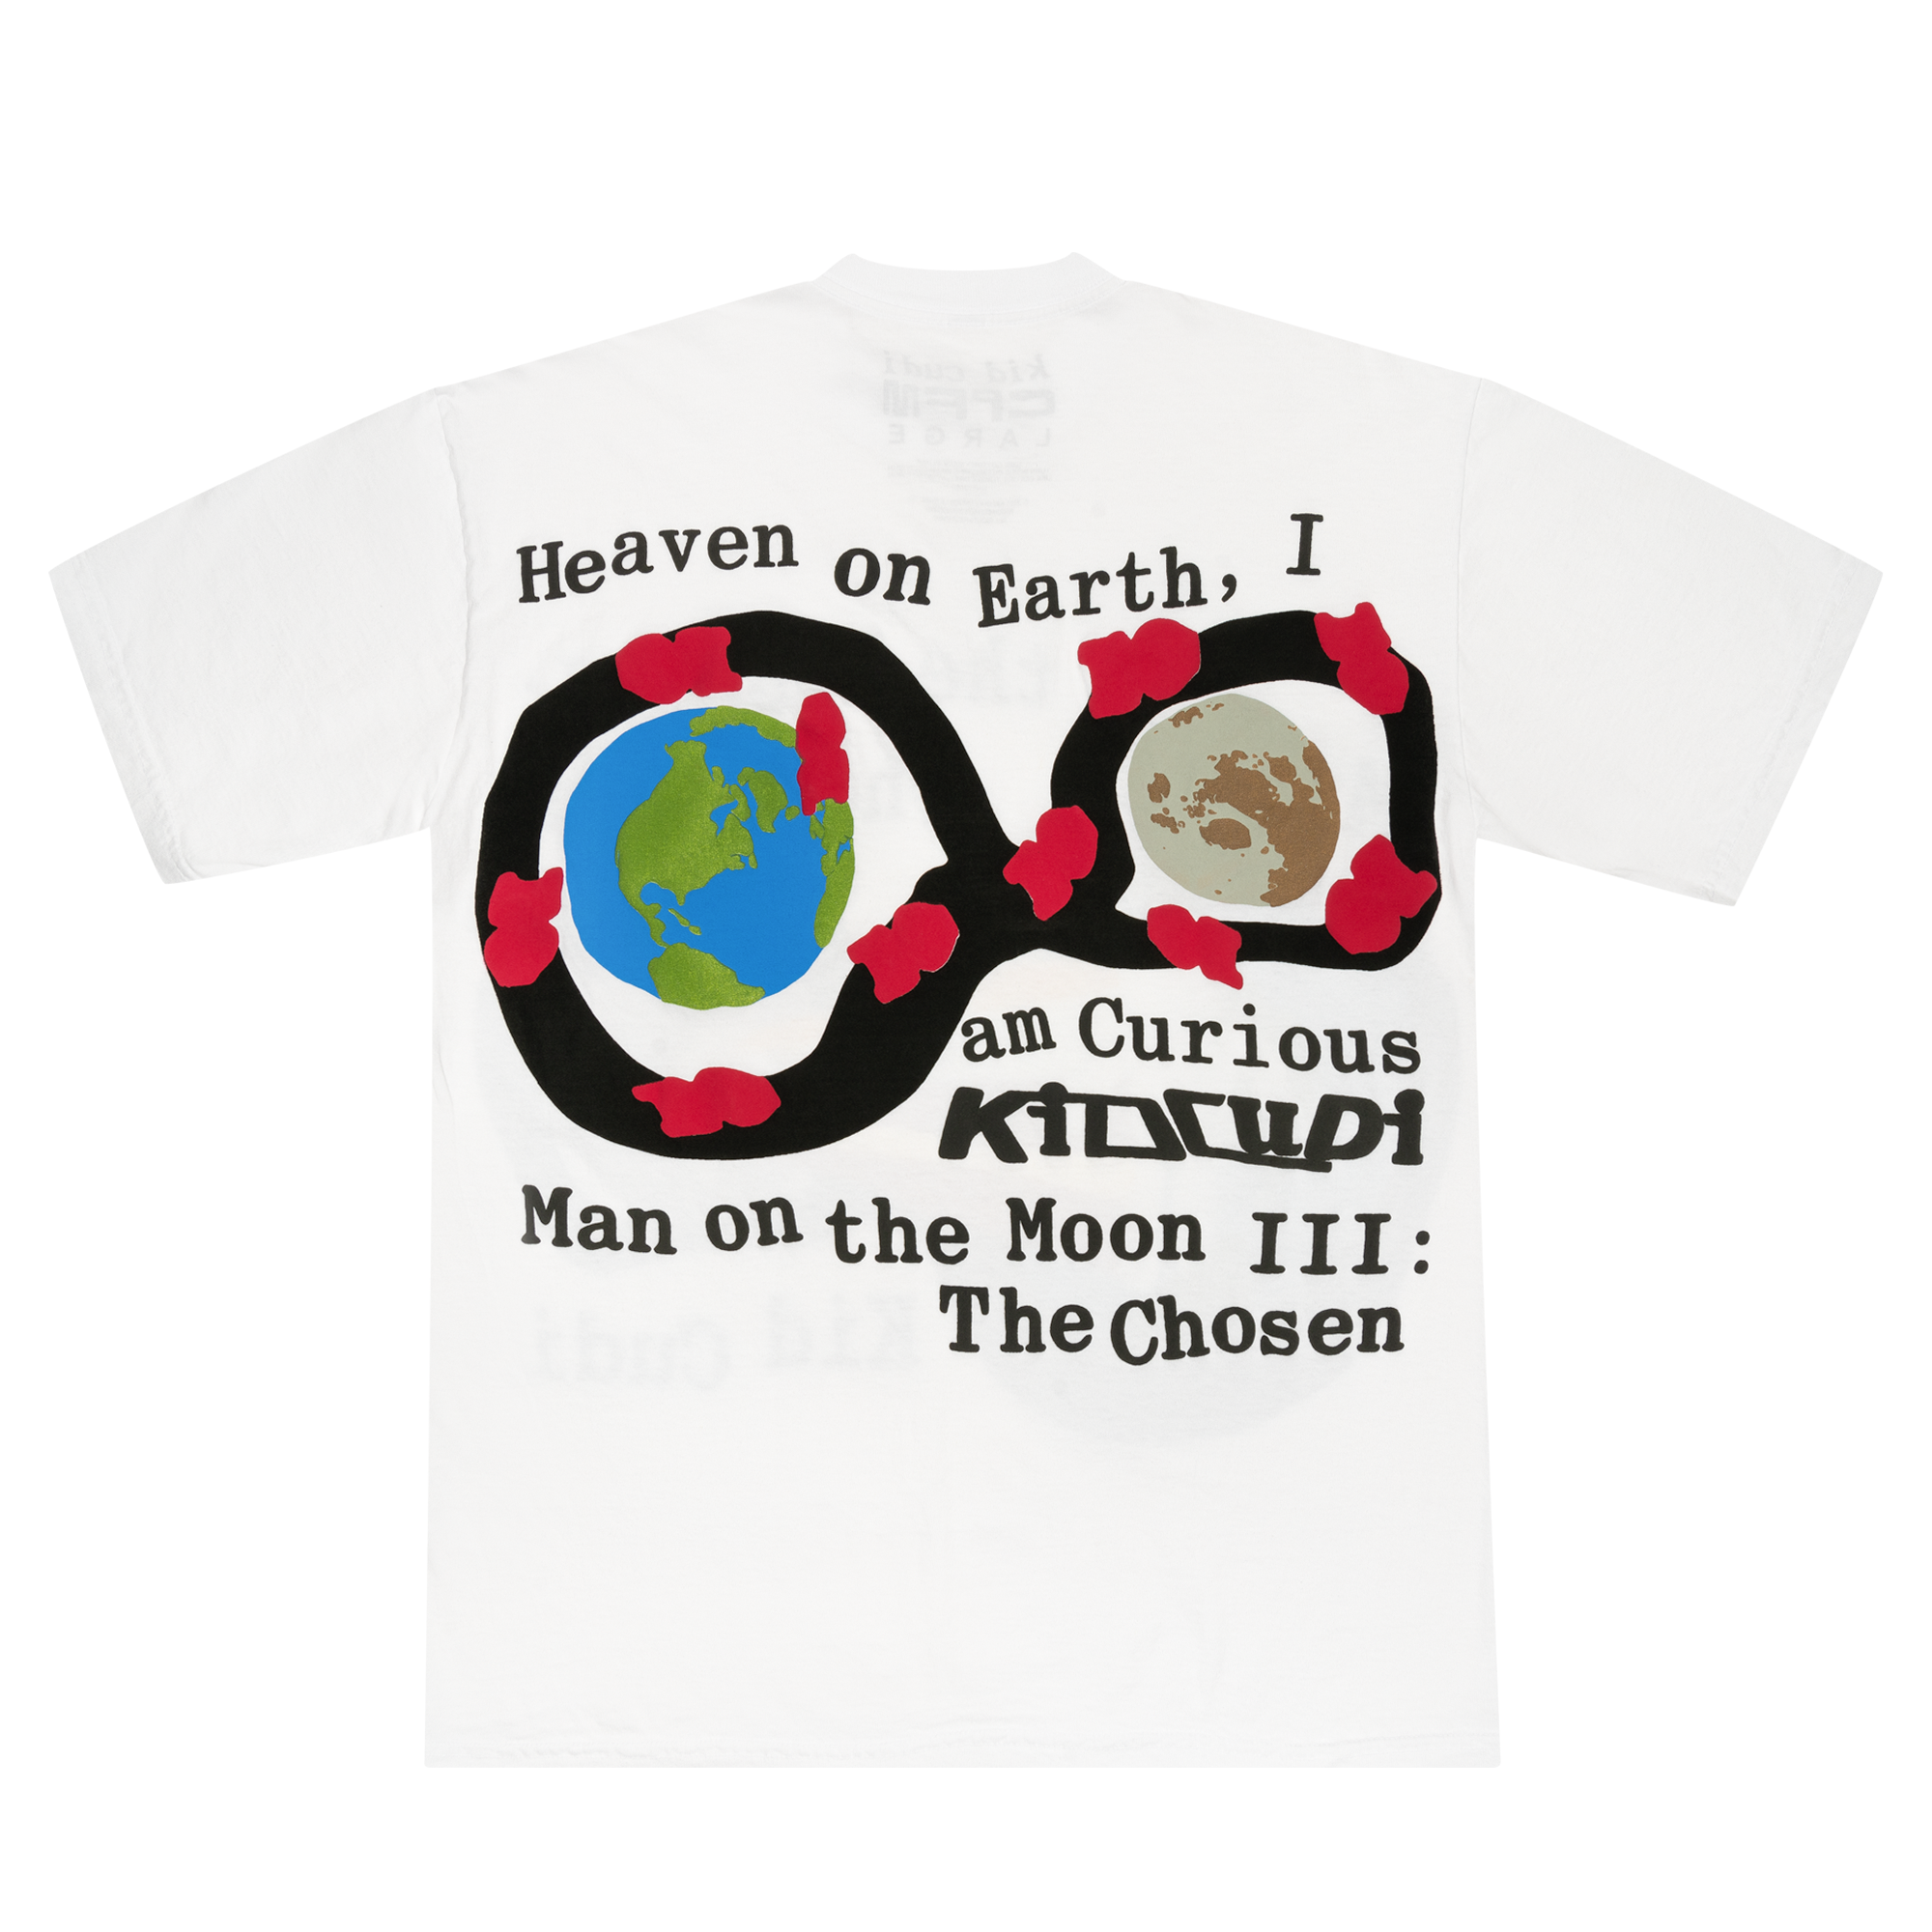 Kid Cudi x CPFM MOTM III Heaven on Earth T-Shirt White-PLUS